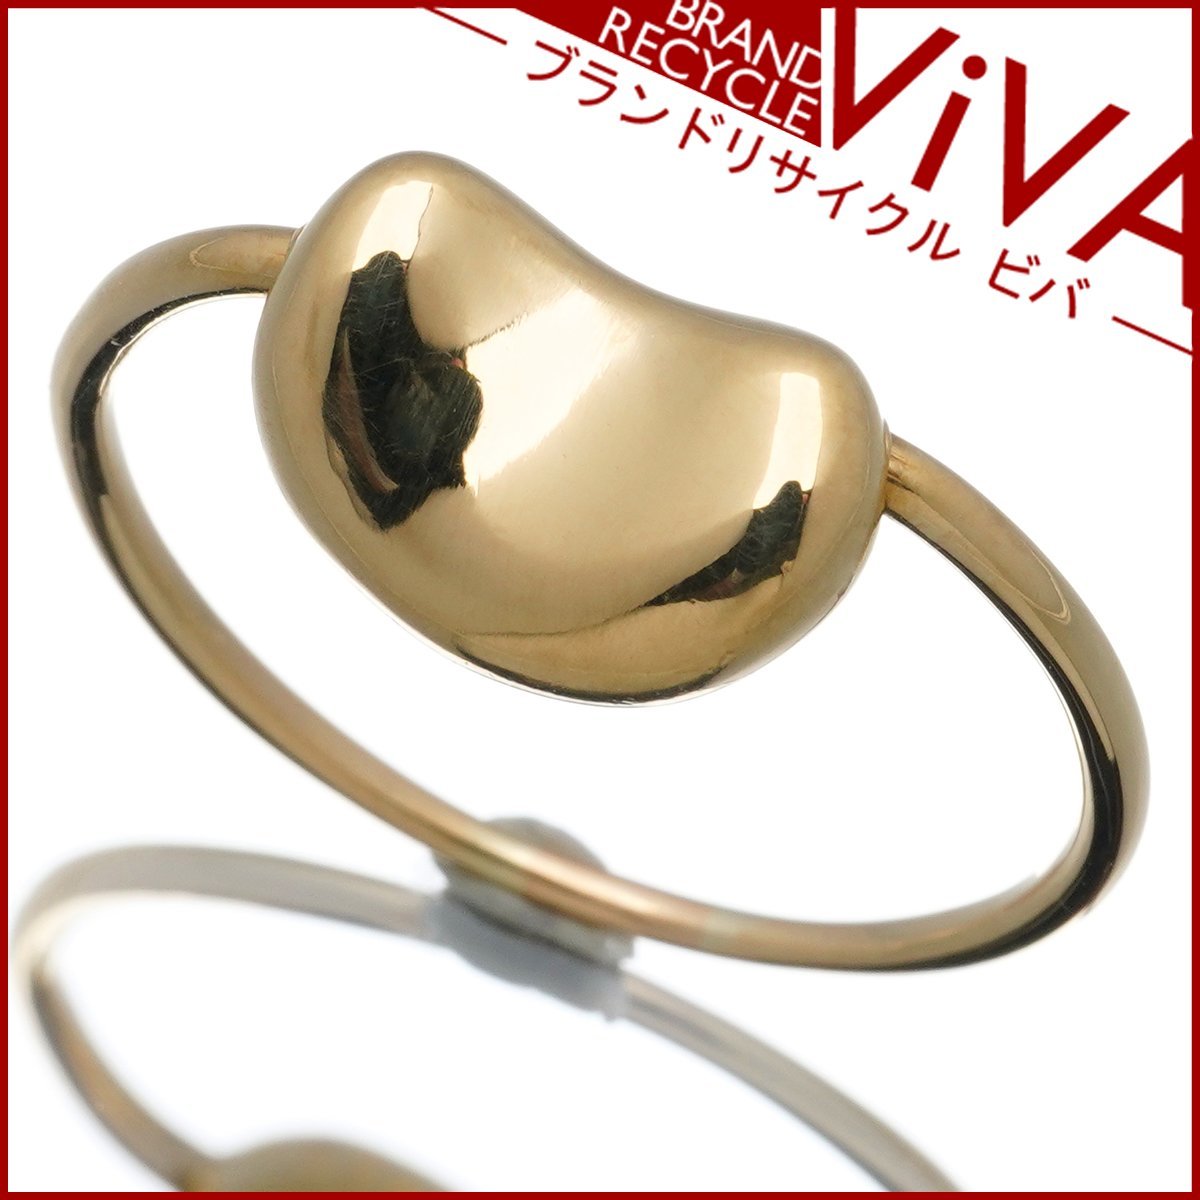 ティファニー ビーン デザイン リング 指輪 750 K18YG イエローゴールド 11号 美品 新品仕上げ済み ゆうパケット対応可能 送料300円の画像1